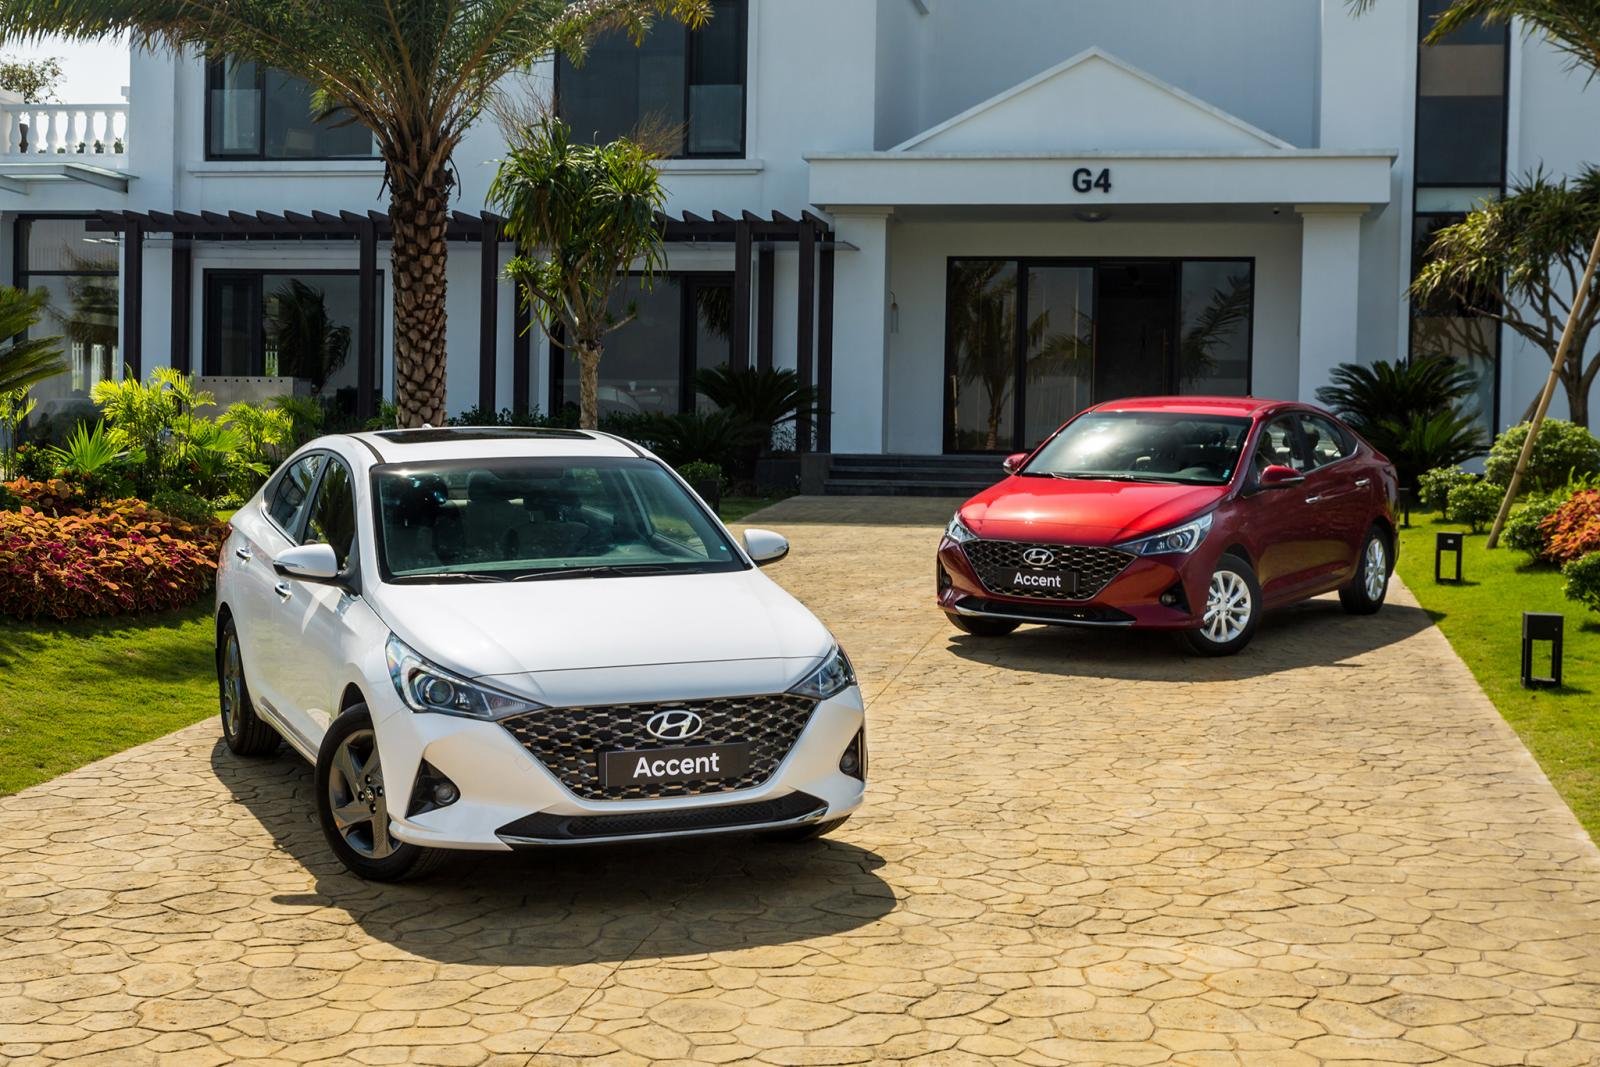 Tất cả mẫu xe của Hyundai đều sụt giảm doanh số so với tháng 6 do đại dịch